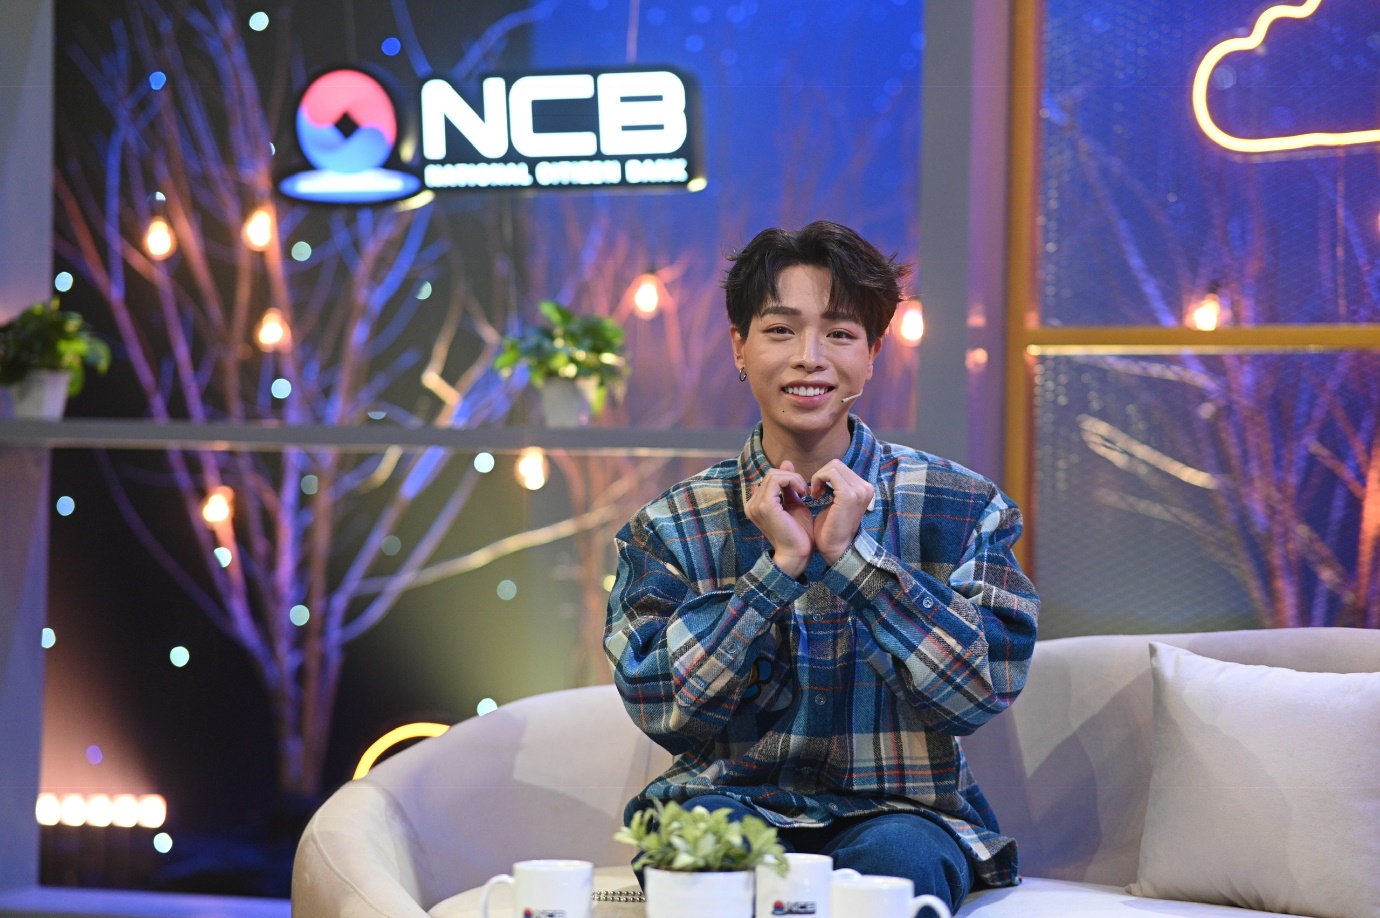 Vì sao “NCB Sing & Share Show” lại thu hút giới trẻ và nhiều nghệ sĩ nổi tiếng? - Ảnh 1.